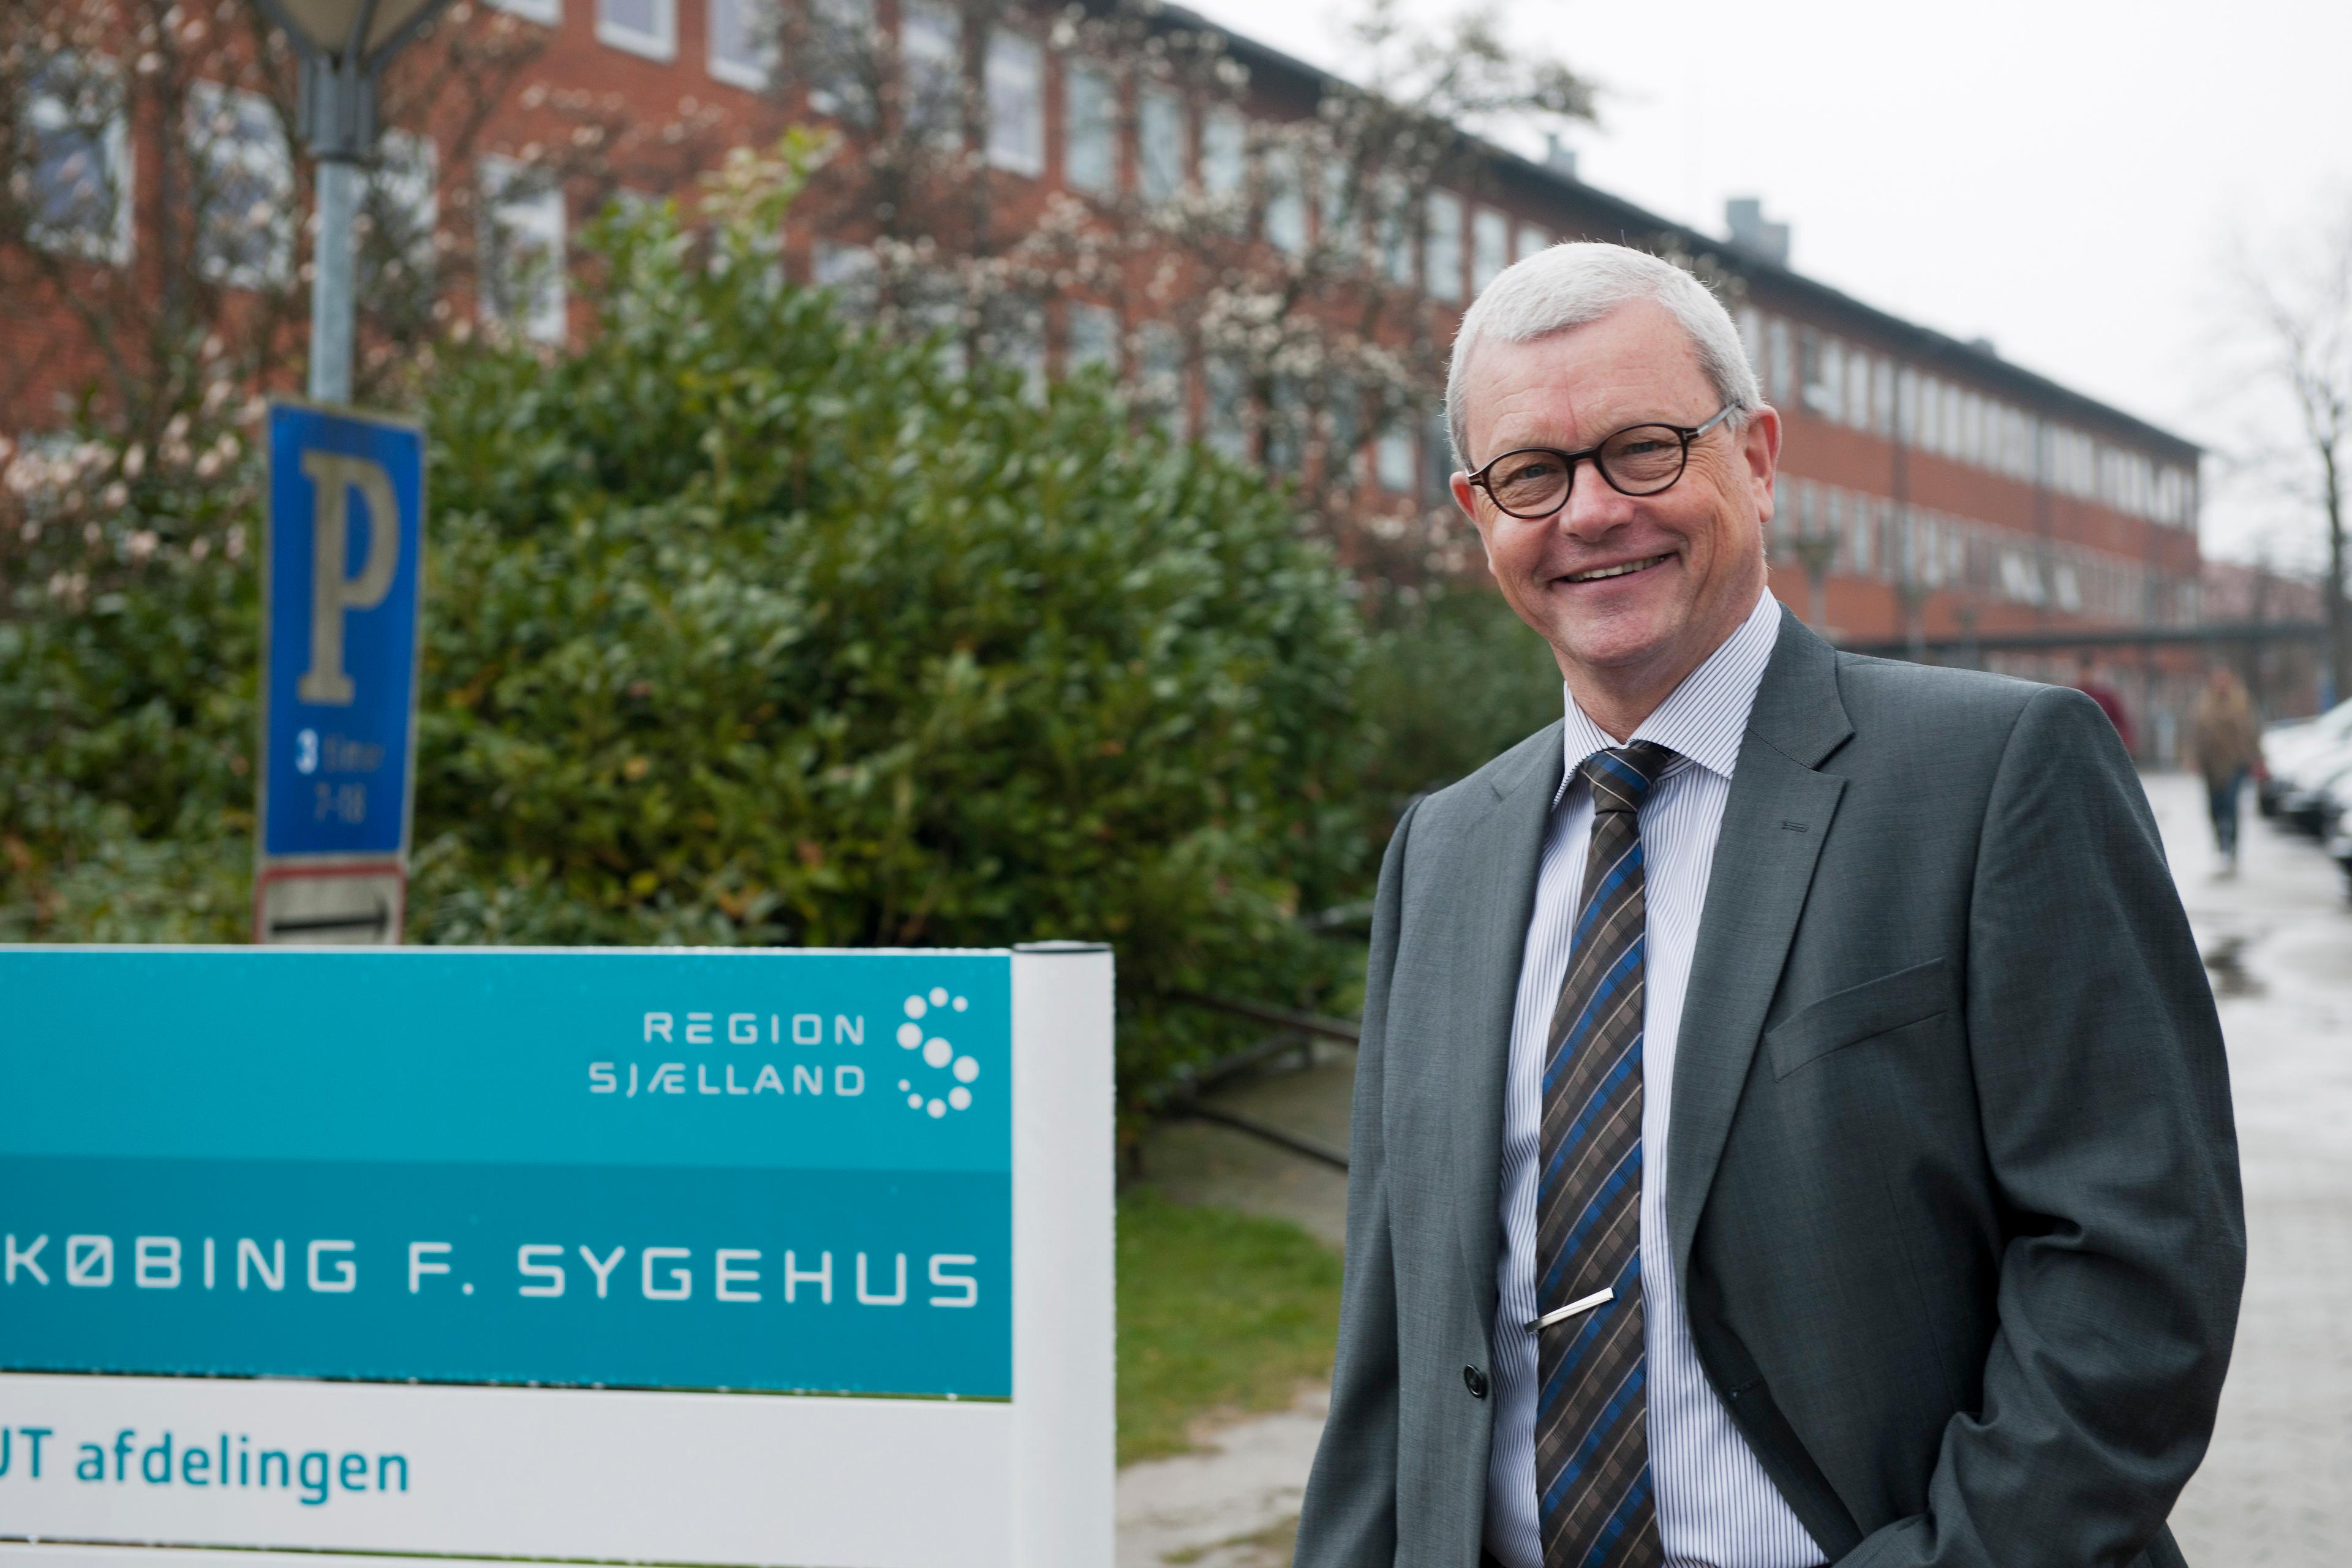 Sygehusdirektør ved Nykøbing F. Sygehus, Arne Cyron, vender den 1. september tilbage til den patientbehandling som ledende overlæge på medicinsk afdeling på Amager/Hvidovre Hospital.